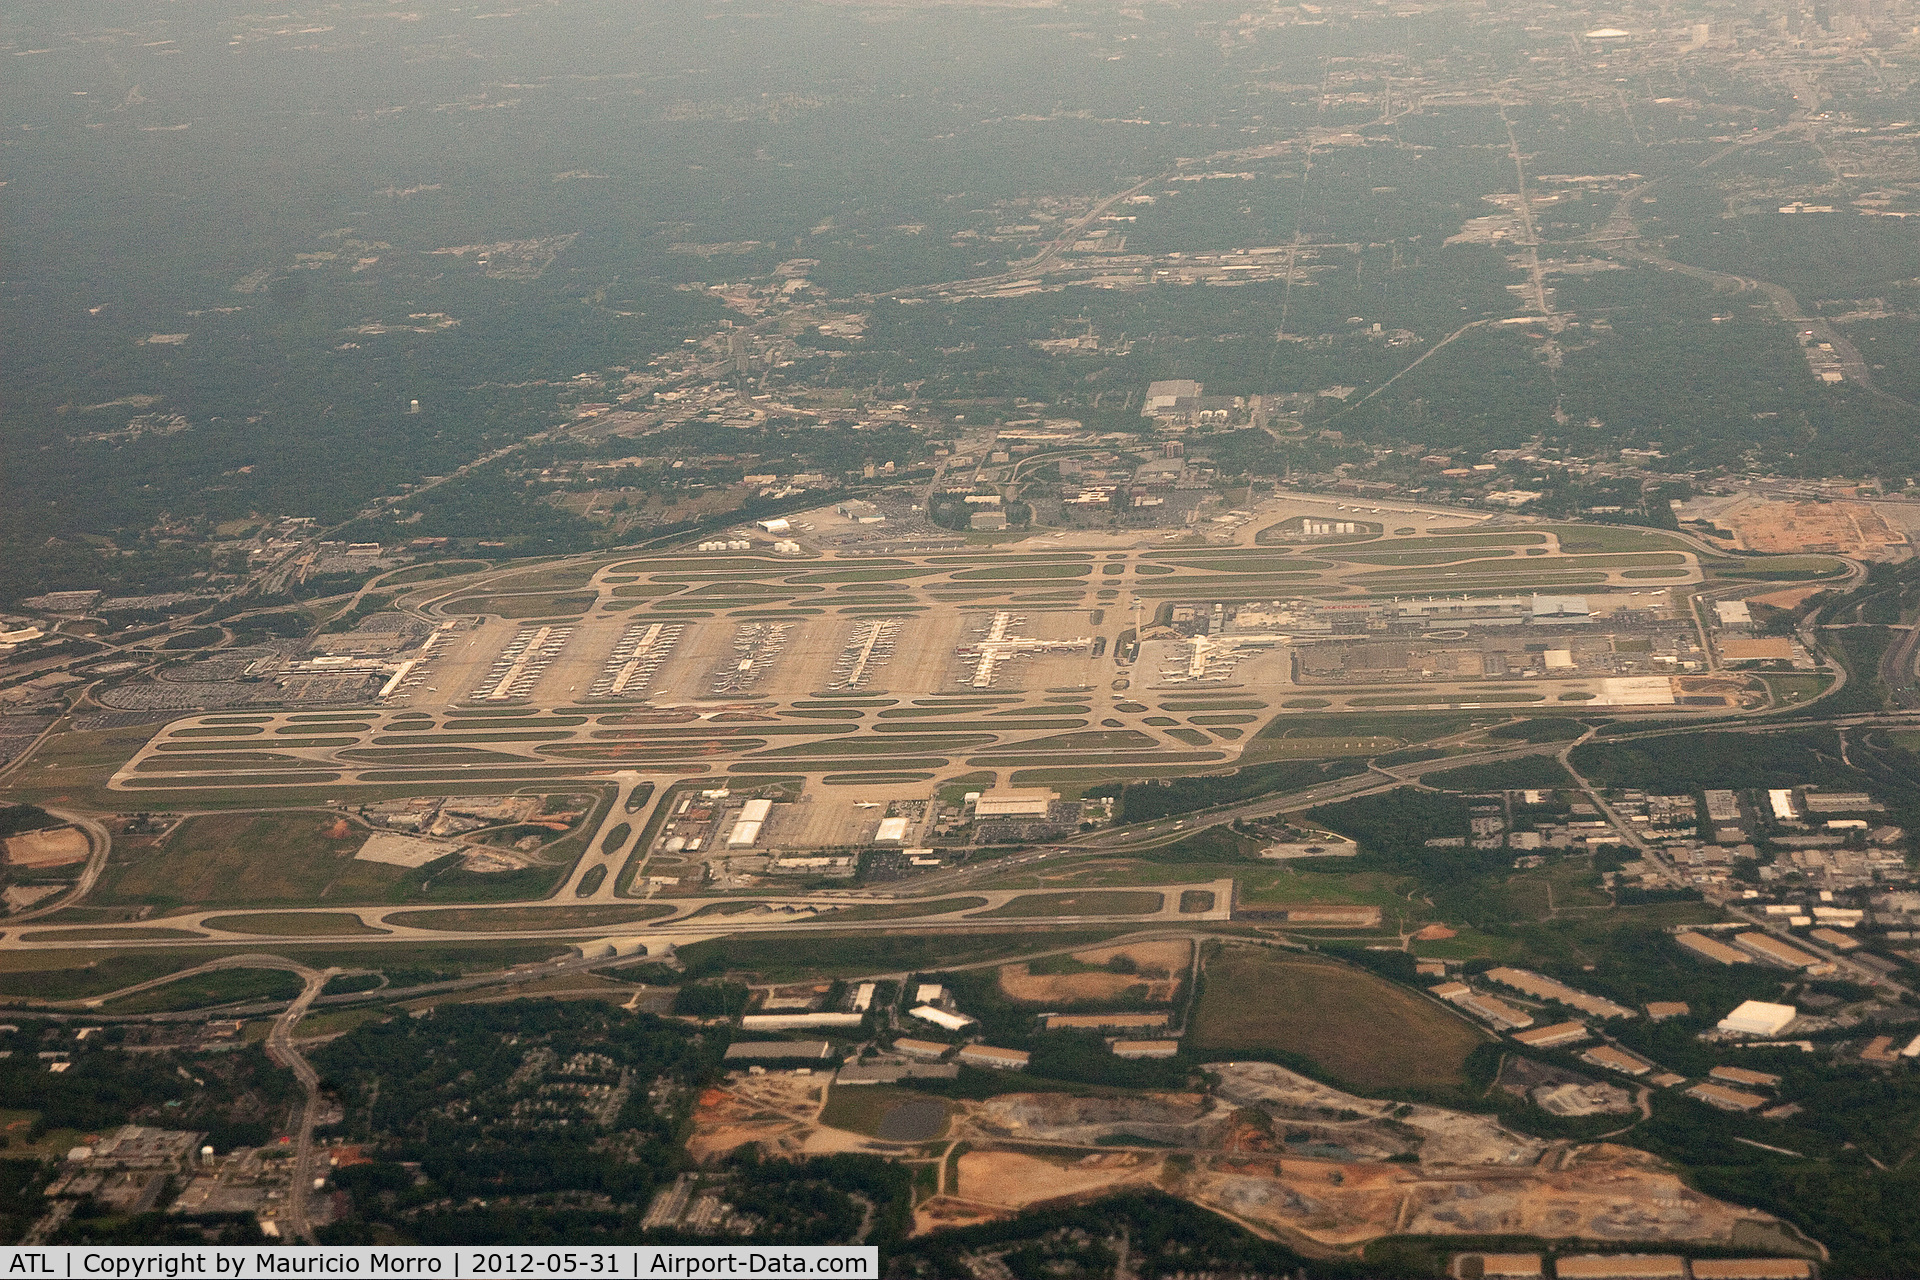 Hartsfield - Jackson Atlanta International Airport (ATL) - Arriving at ATL